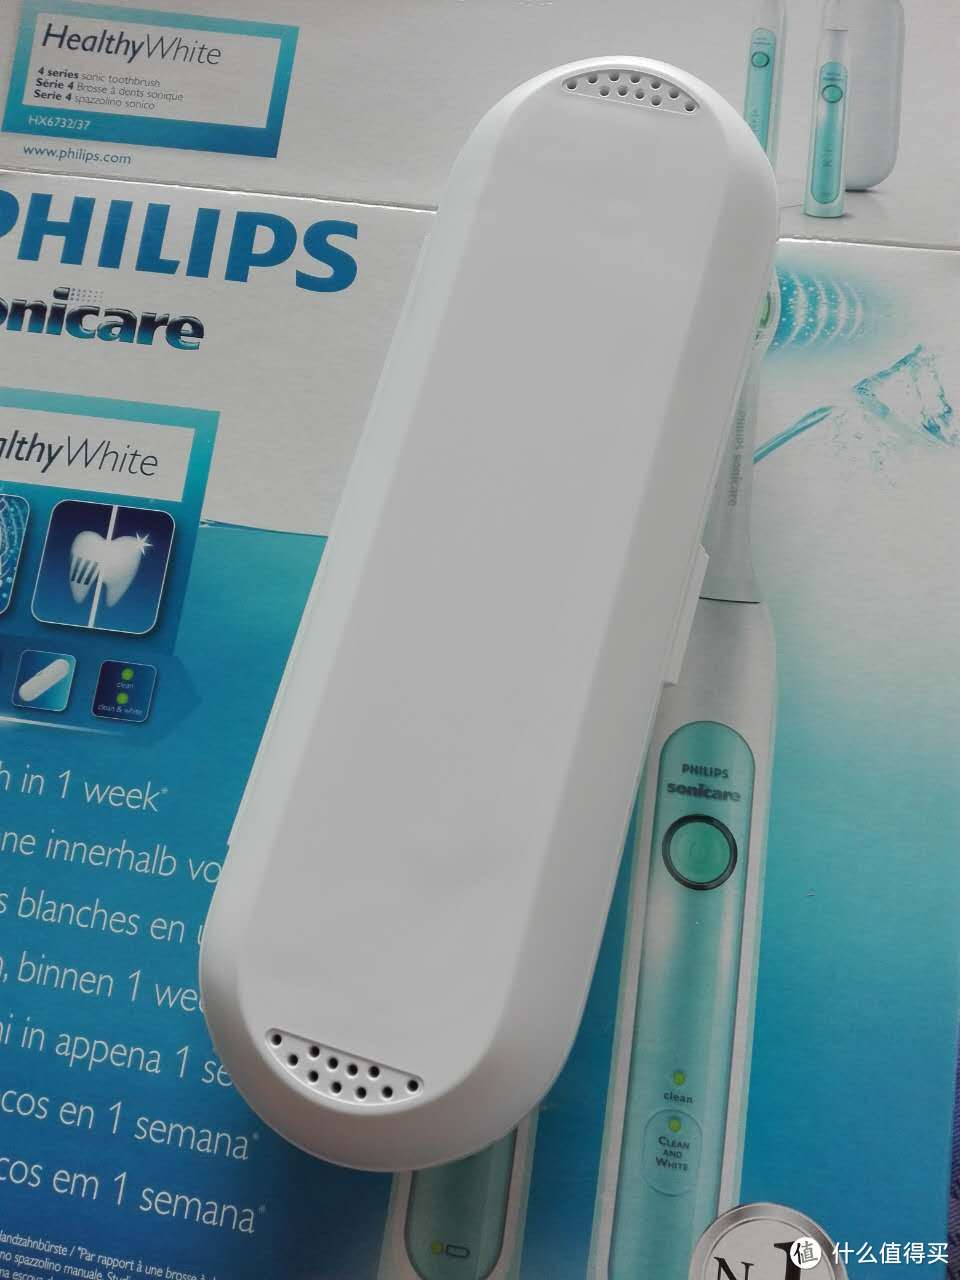 意大利亚马逊购入philips HX6732/37 电动牙刷